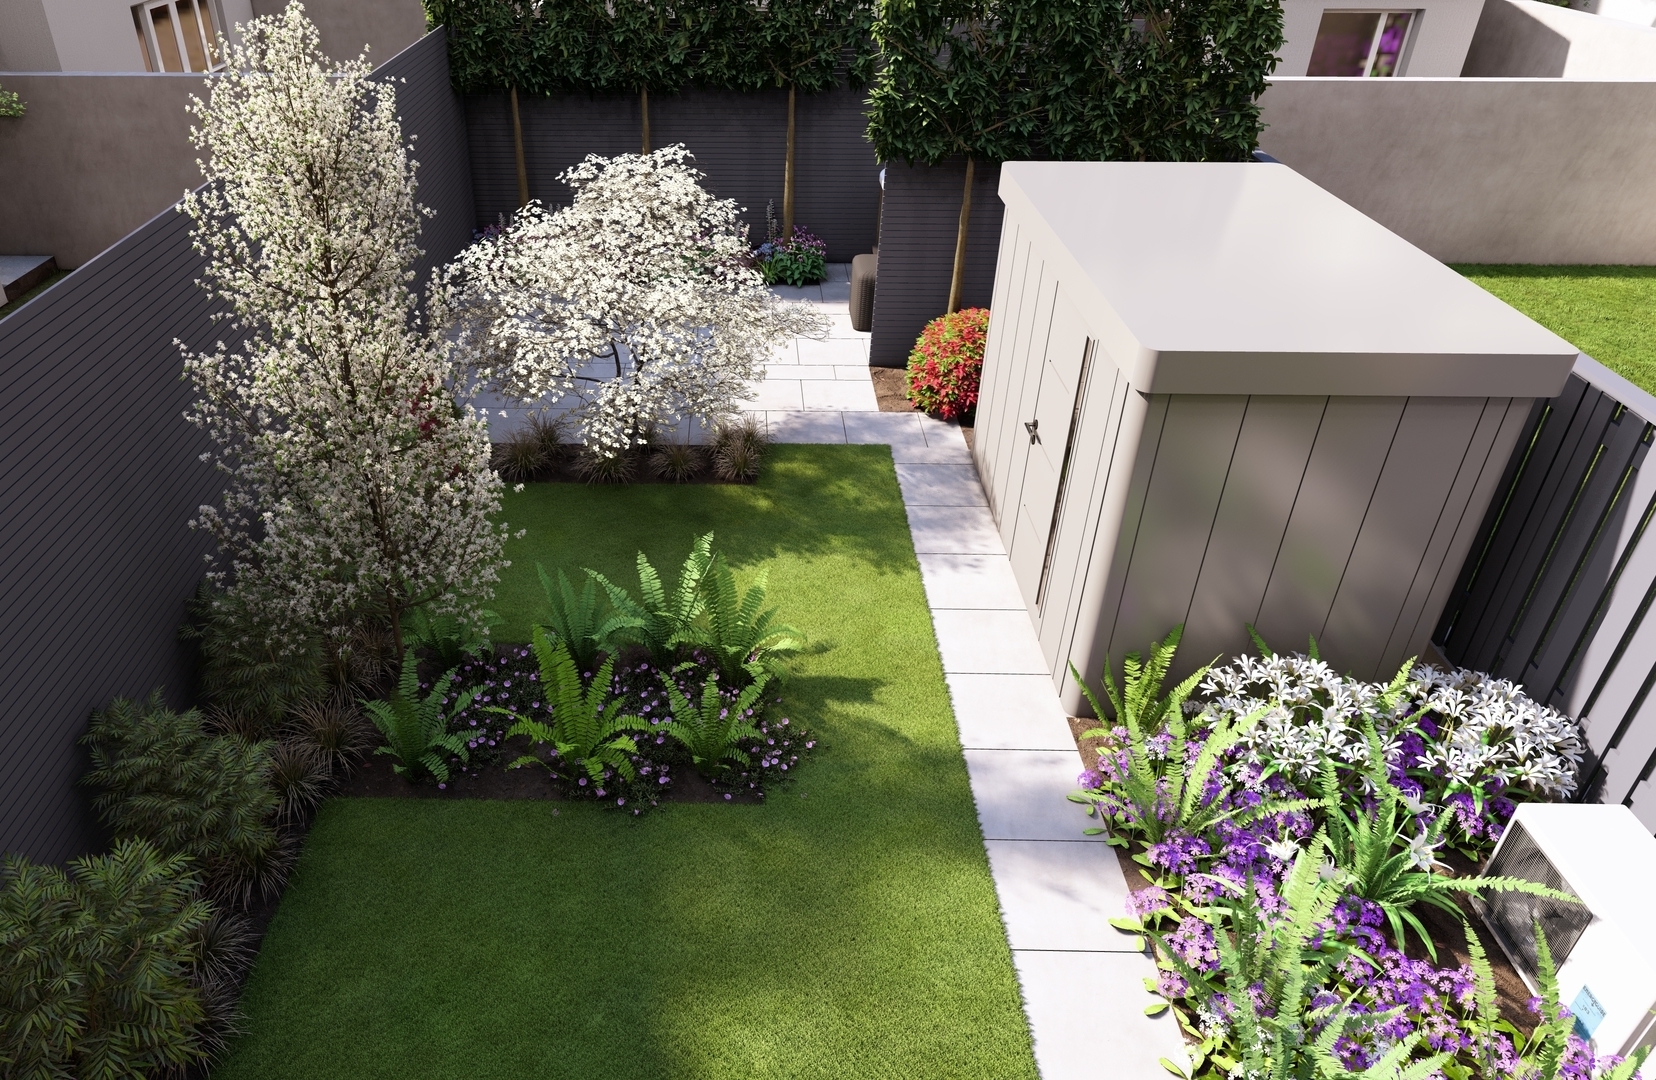 Garden Design Portmarnock, Dublin 13 with the emphasis on a colourful, versatile & private outdoor space  |  Owen Chubb Garden Design, Tel 087-2306 128